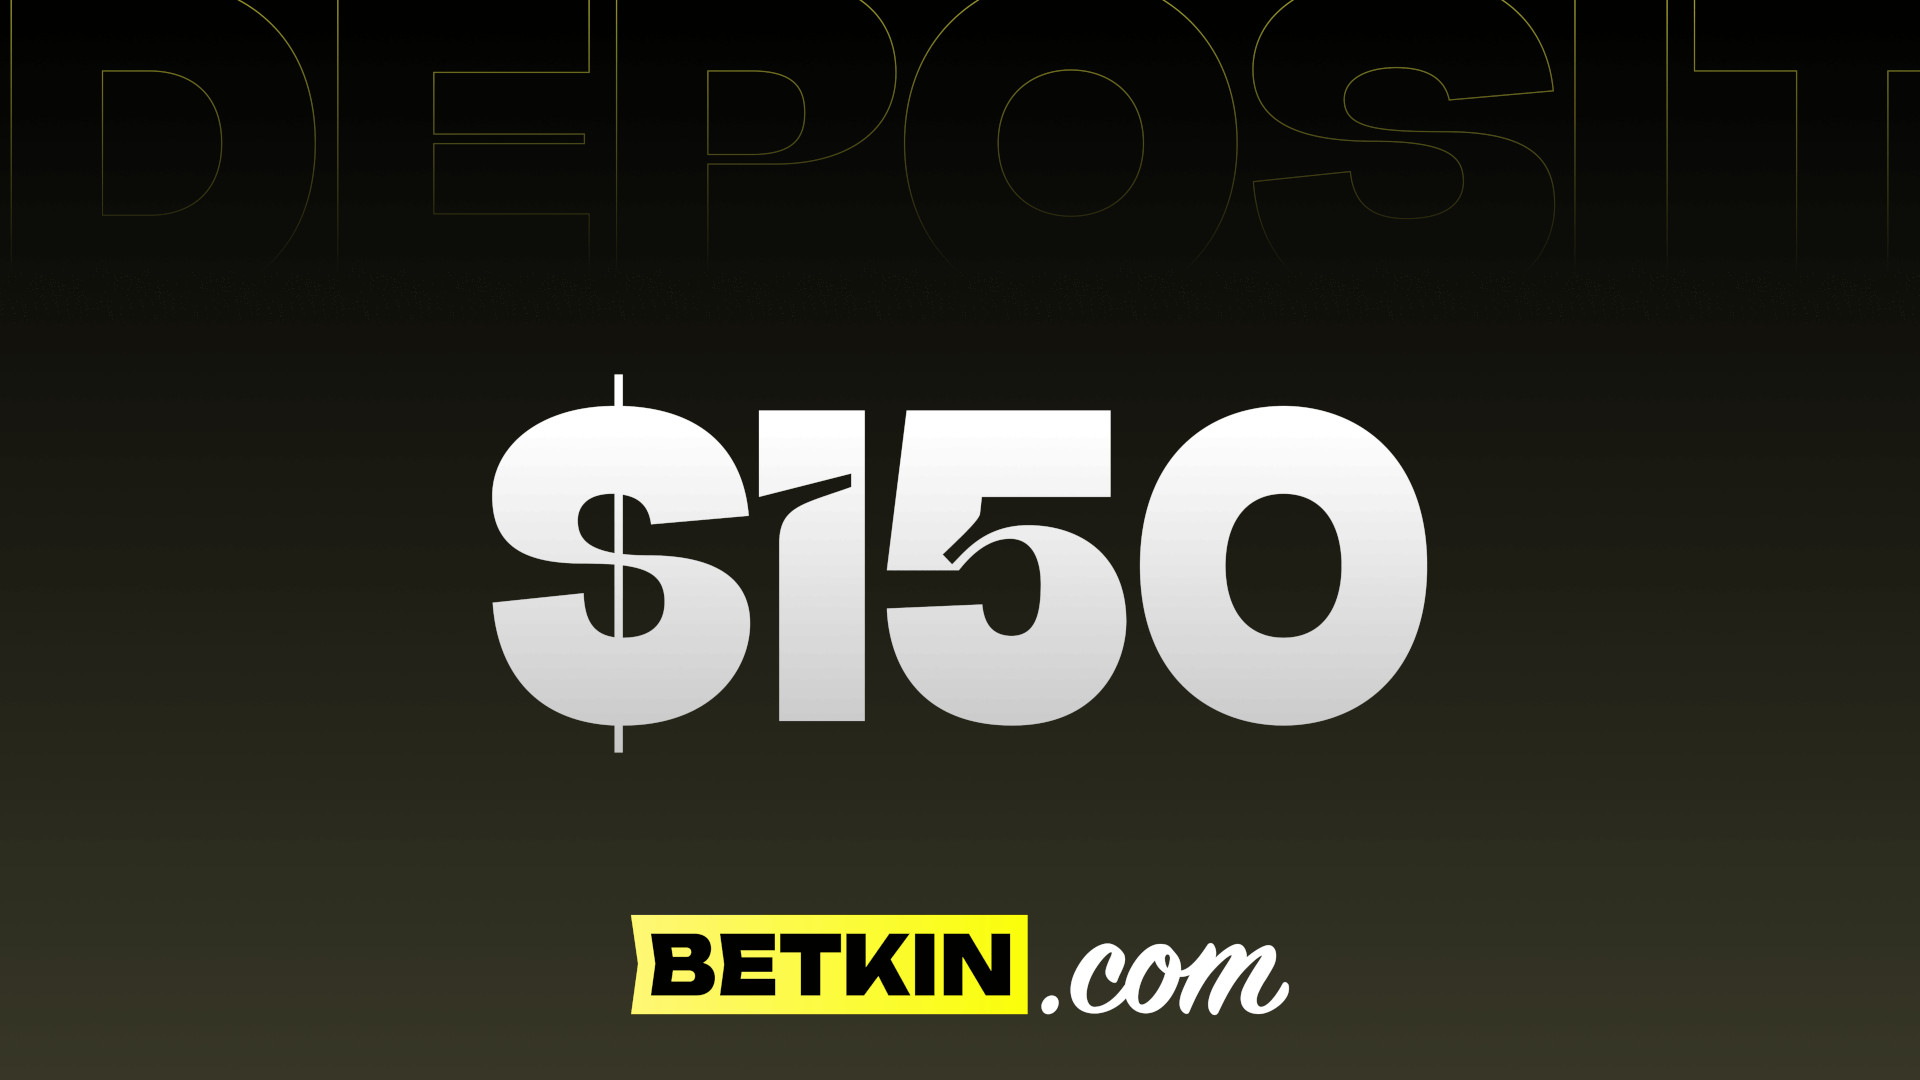 Betkin $150 Coupon, $166.96